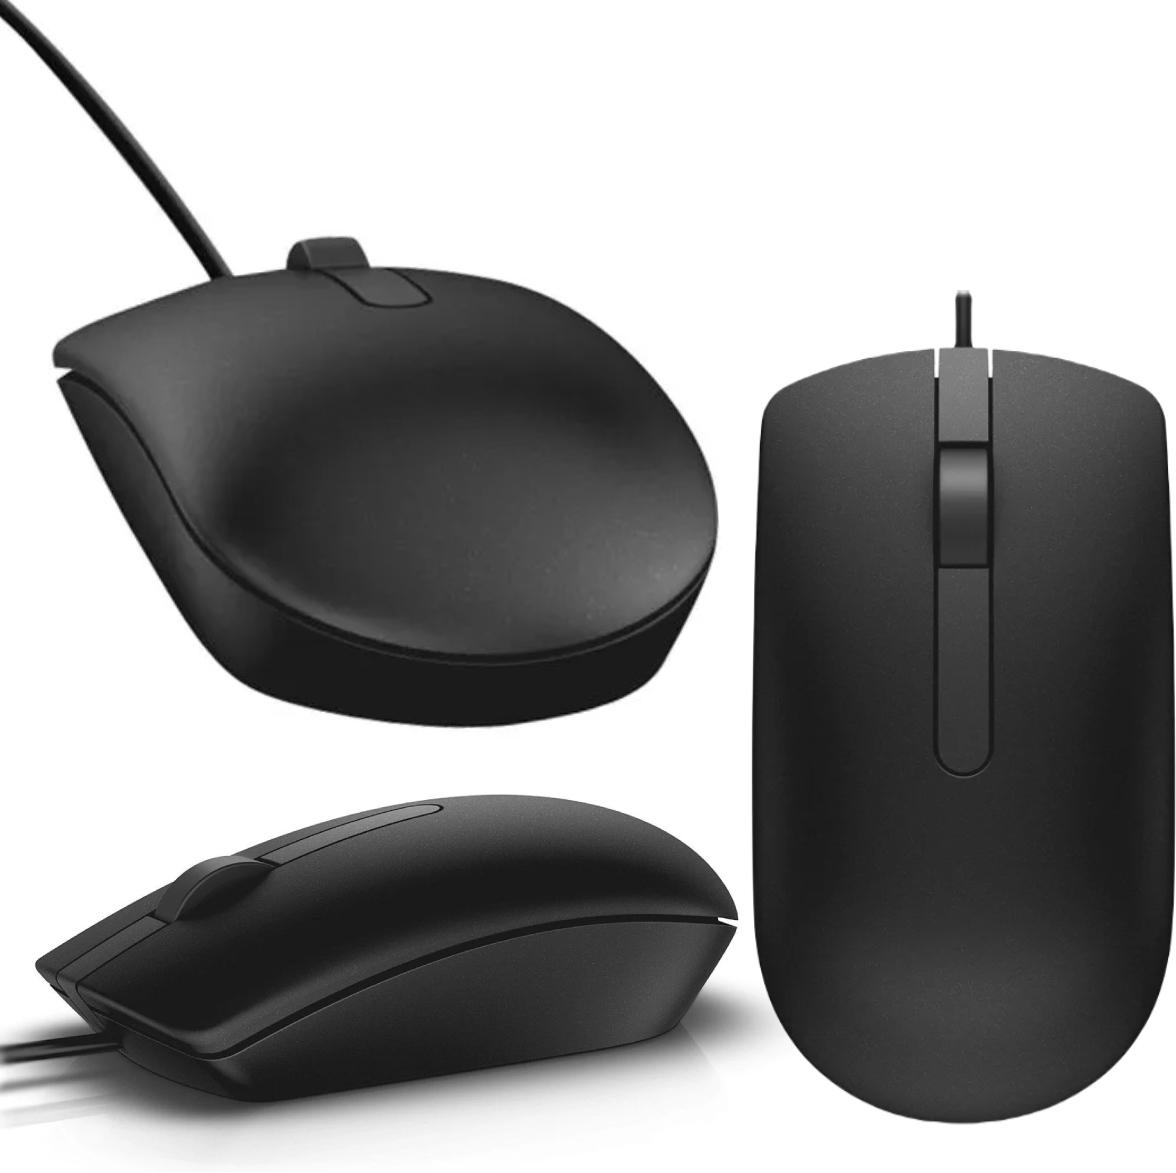 Uniwersalna przewodowa mysz optyczna Dell MS116 Wired Optical Mouse - najważniejsze cechy urządzenia: